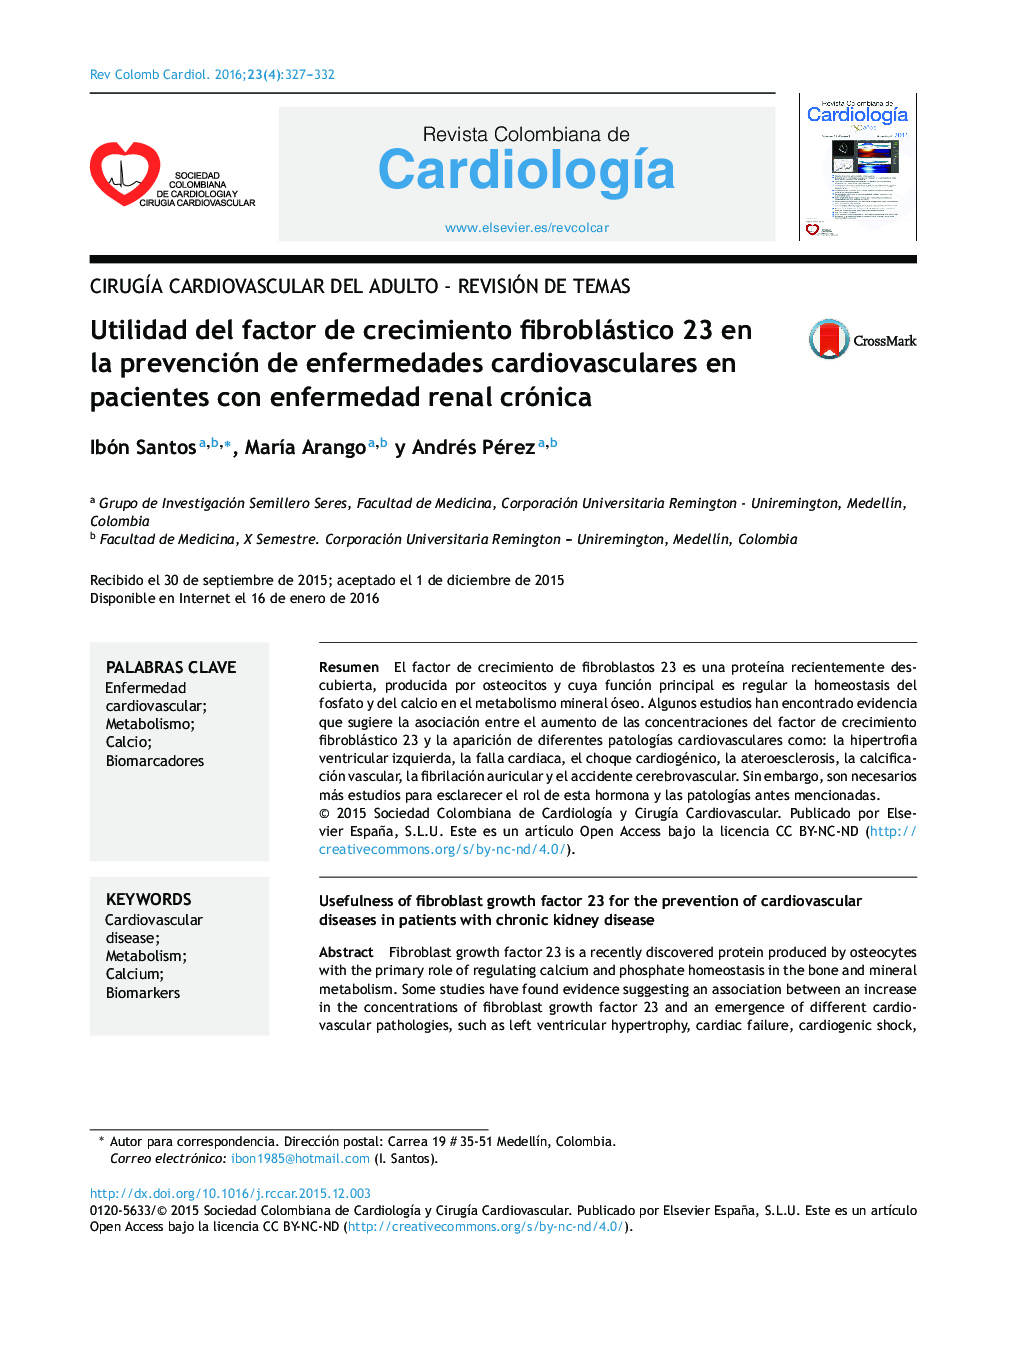 Utilidad del factor de crecimiento fibroblástico 23 en la prevención de enfermedades cardiovasculares en pacientes con enfermedad renal crónica